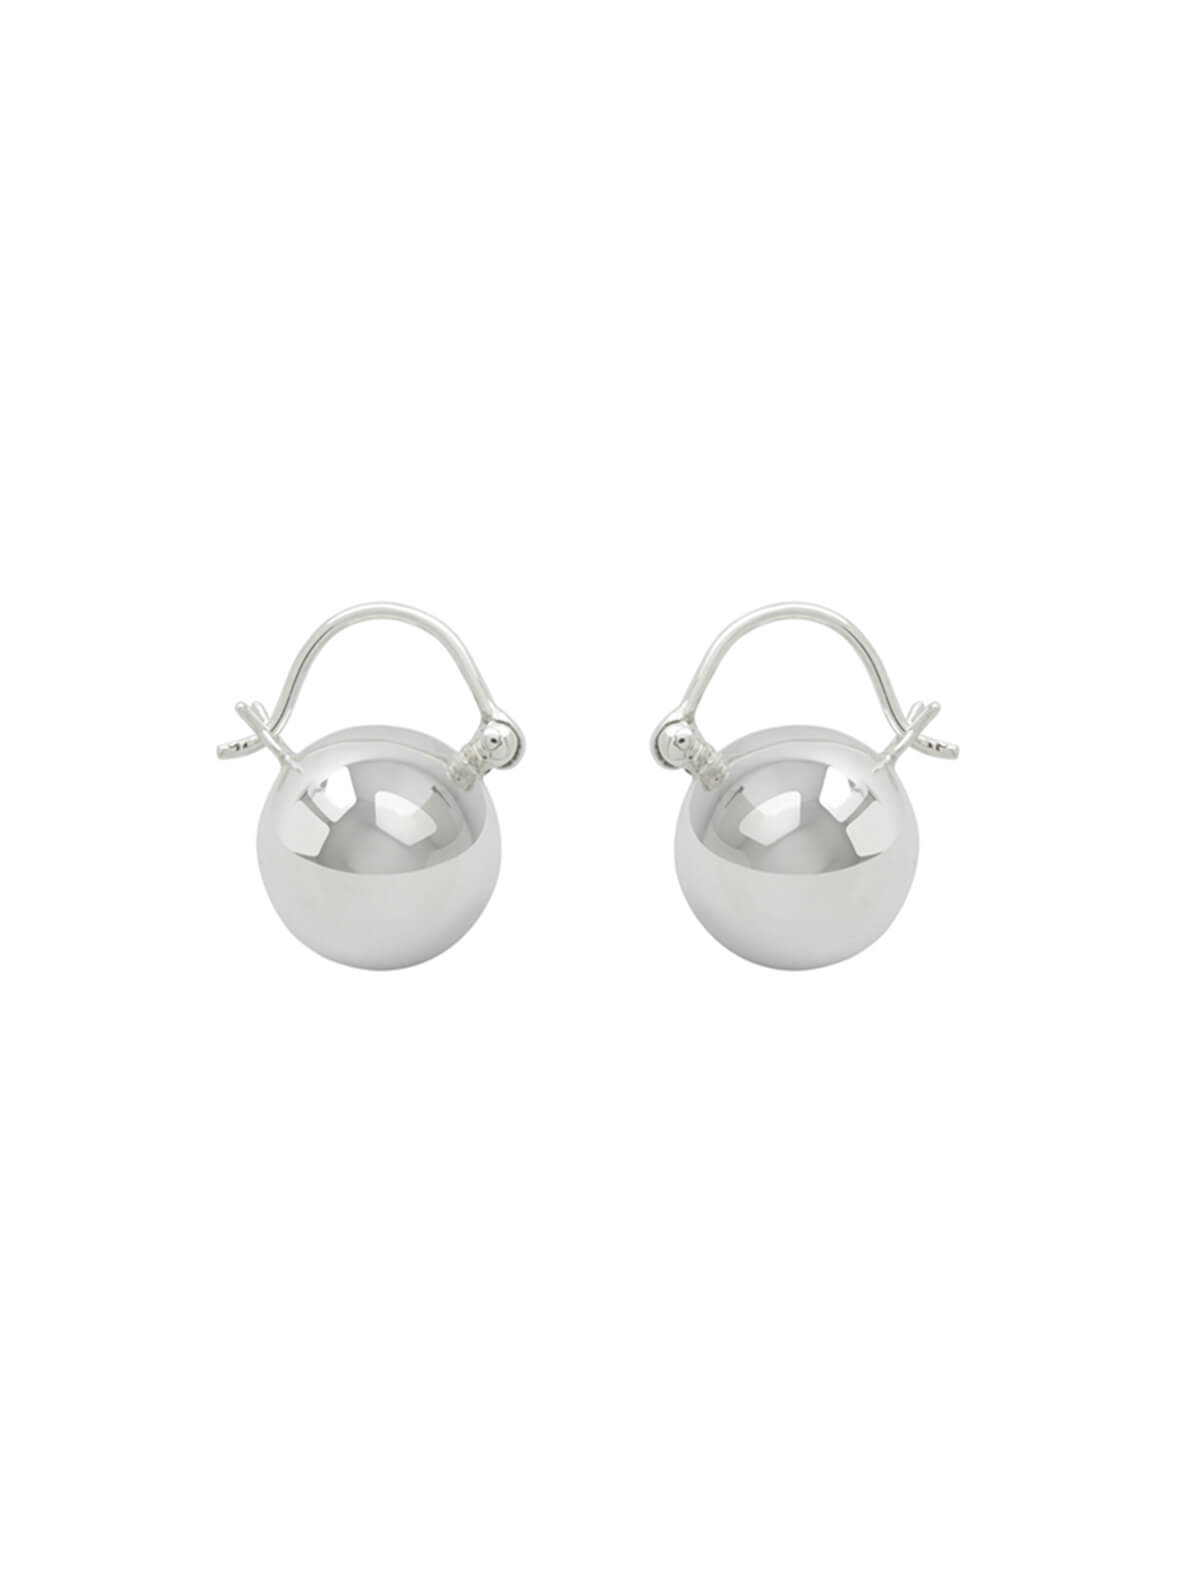 BEAUFILLE Robusta Hoop Earrings in Silver